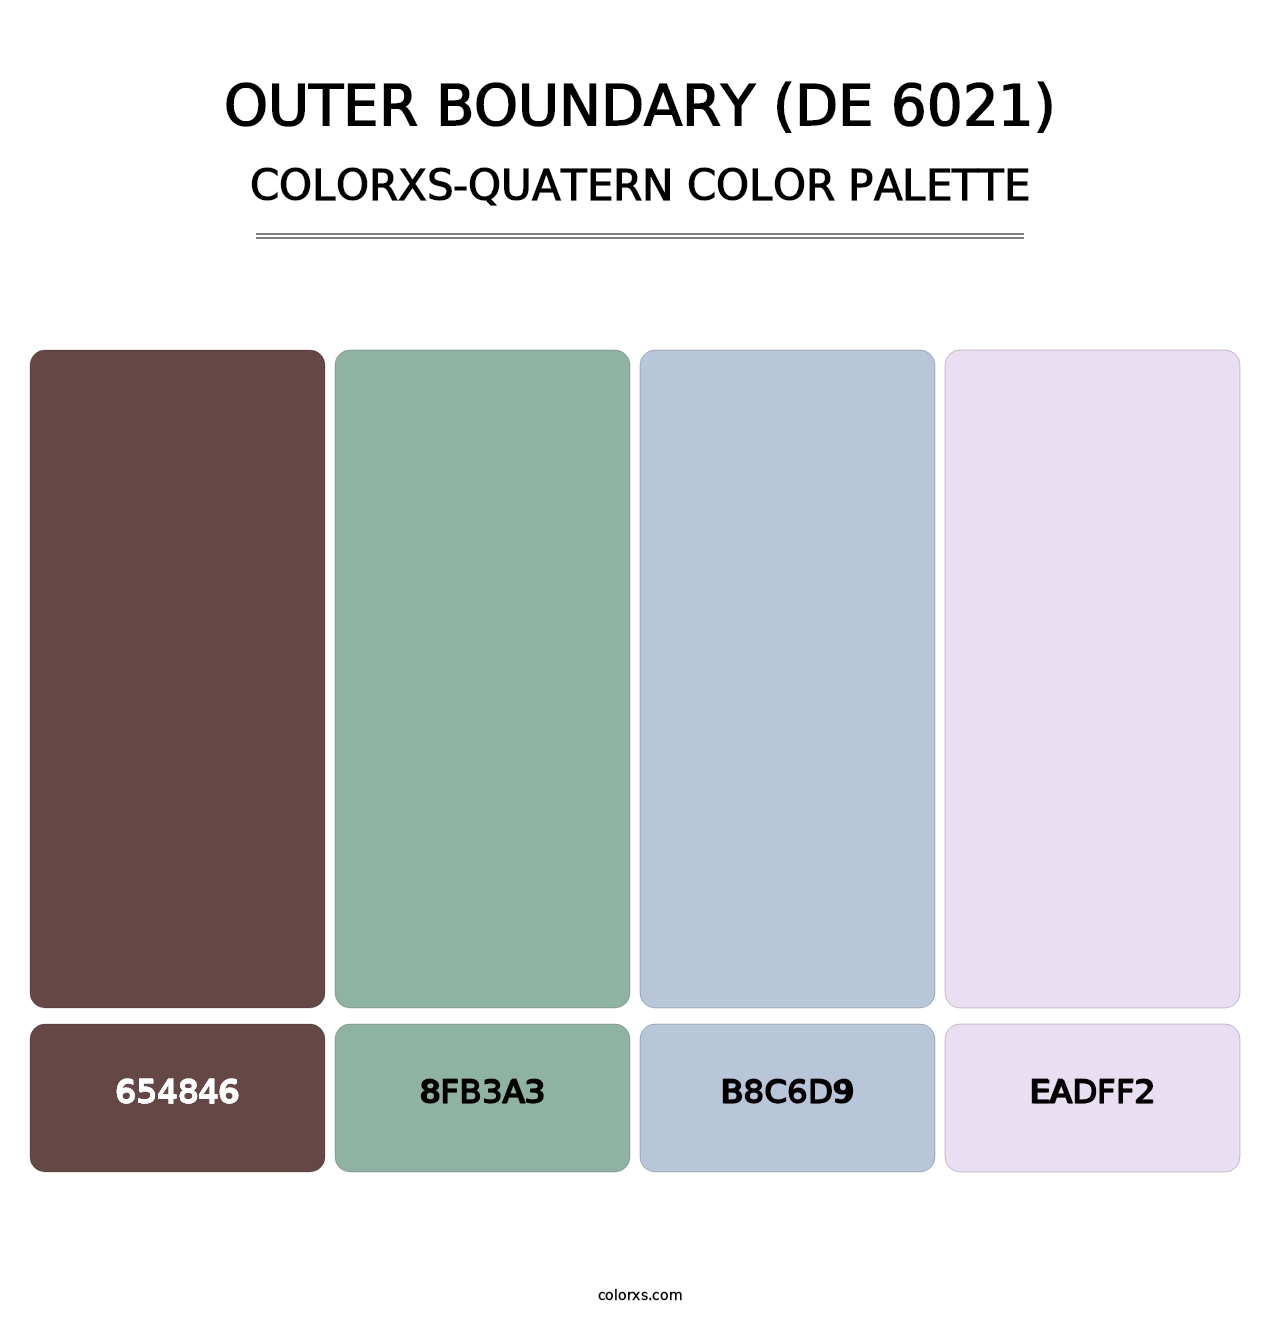 Outer Boundary (DE 6021) - Colorxs Quatern Palette